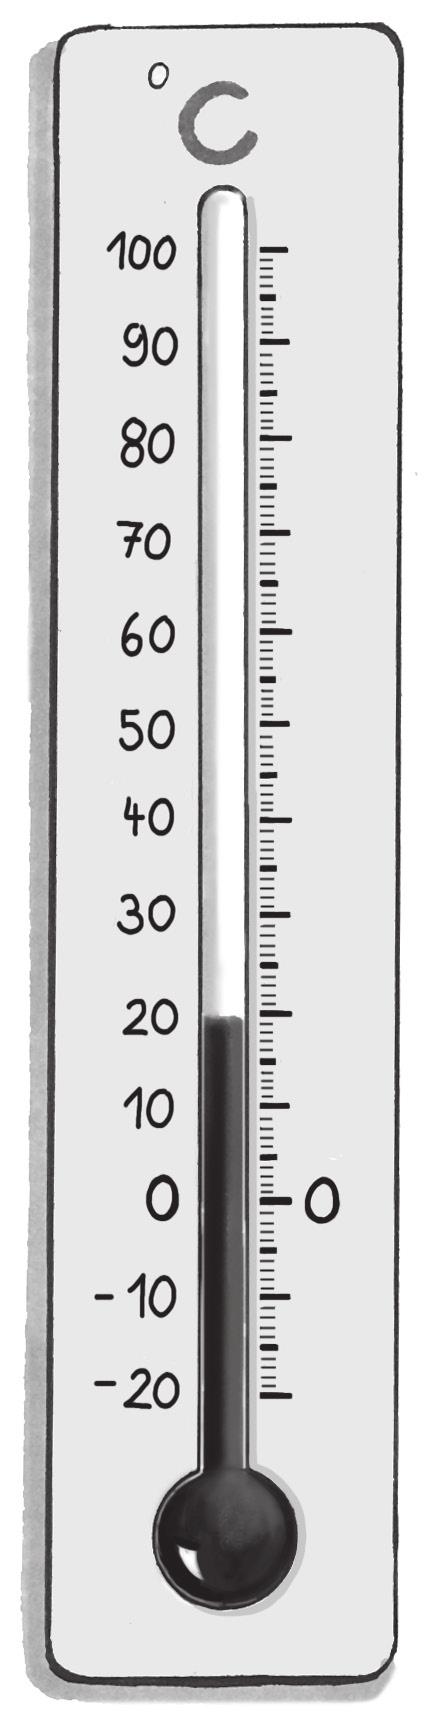 Das Thermometer Die Temperatur kannst du mit einem Thermometer messen. Trage die Bezeichnungen der Teile eines Thermometers ein.